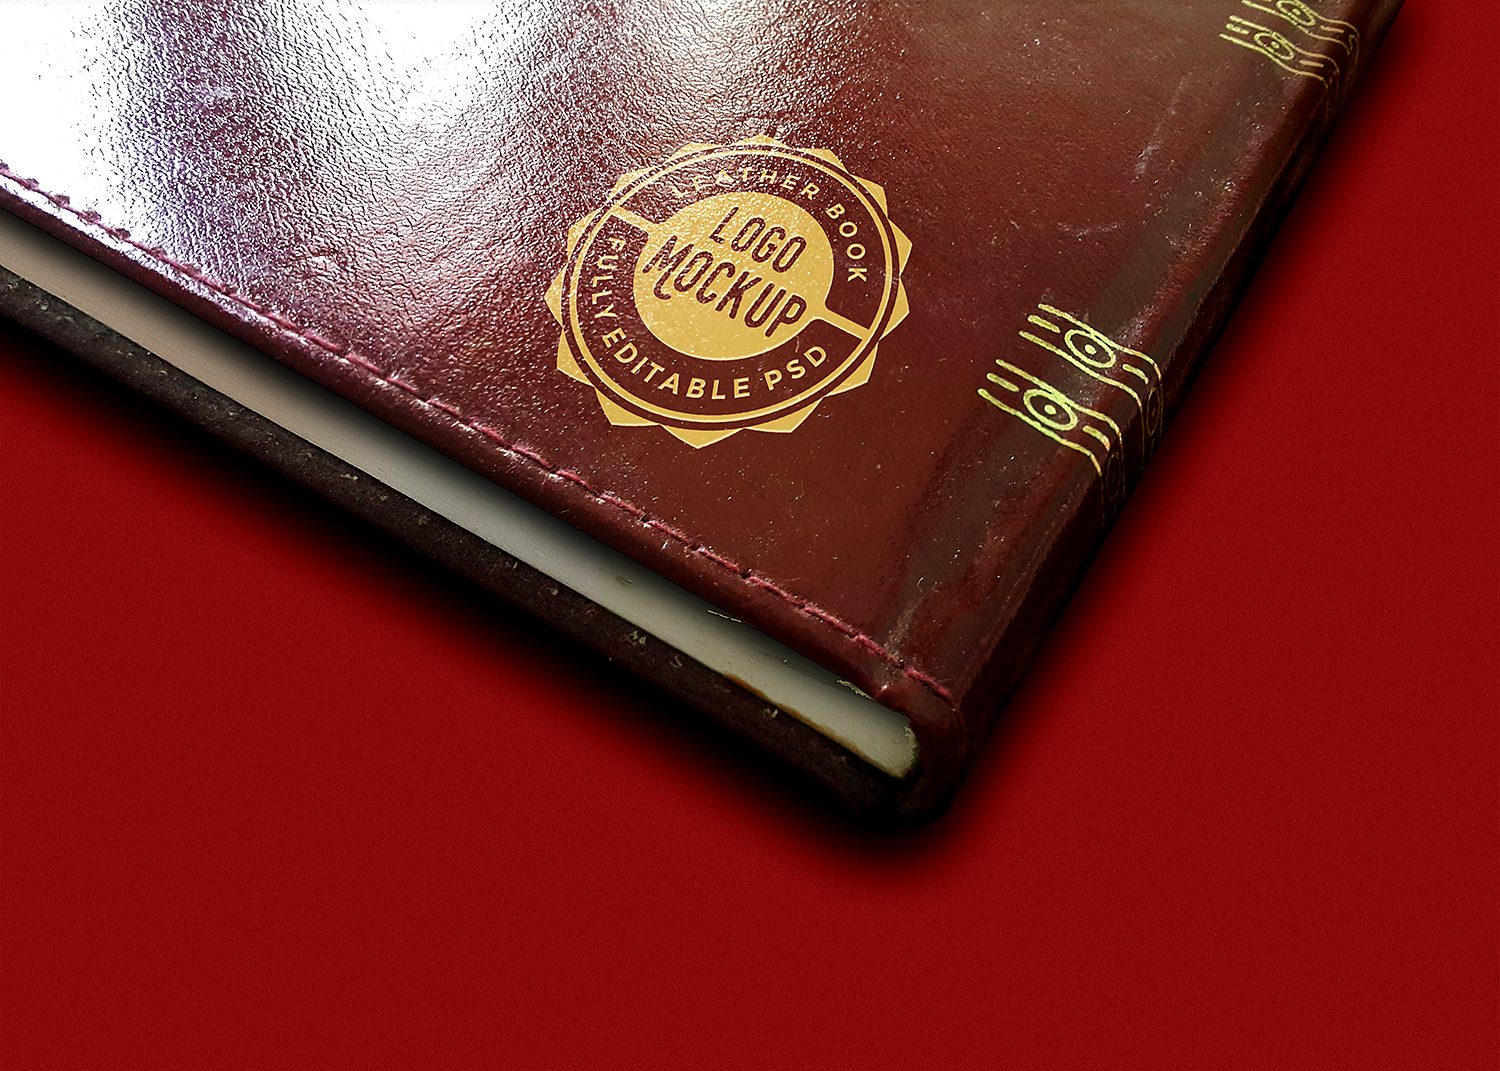 Vintage Leather Book Logo Mockup